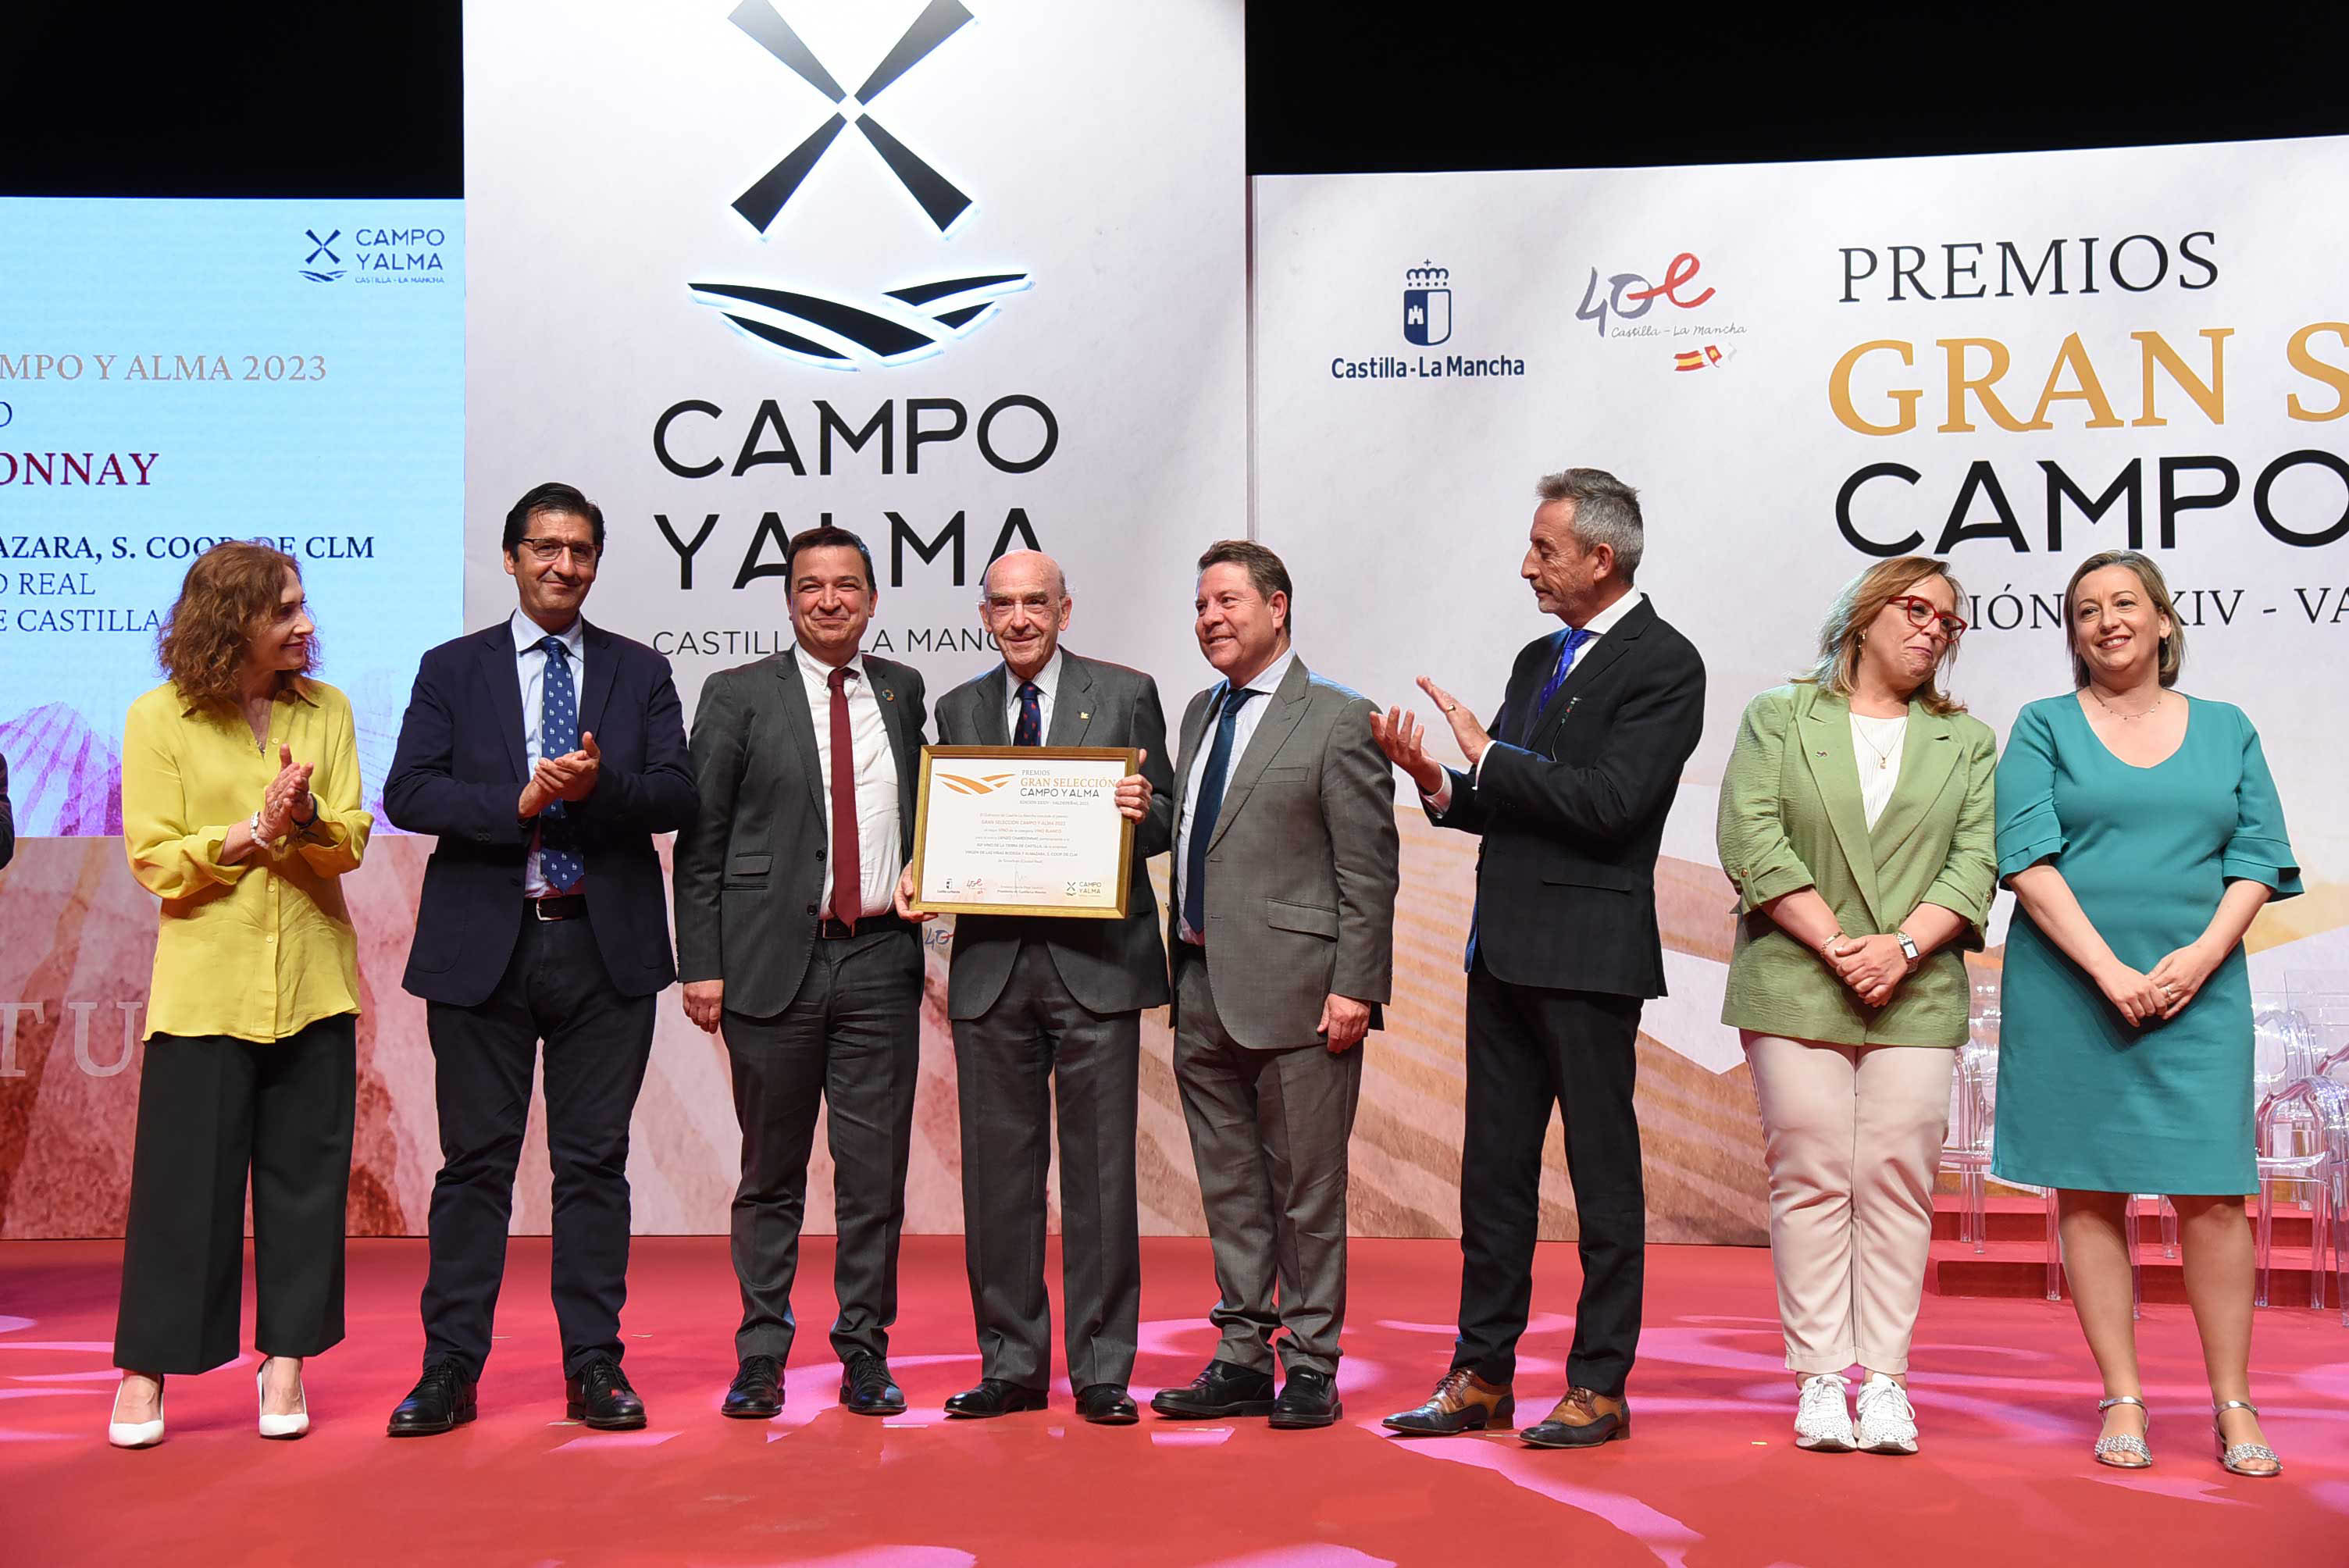 Rafael Torres recoge el premio Gran Selección Campo y Alma otorgado al vino Lienzo Chardonnay de la Cooperativa Virgen de las Viñas de Tomelloso